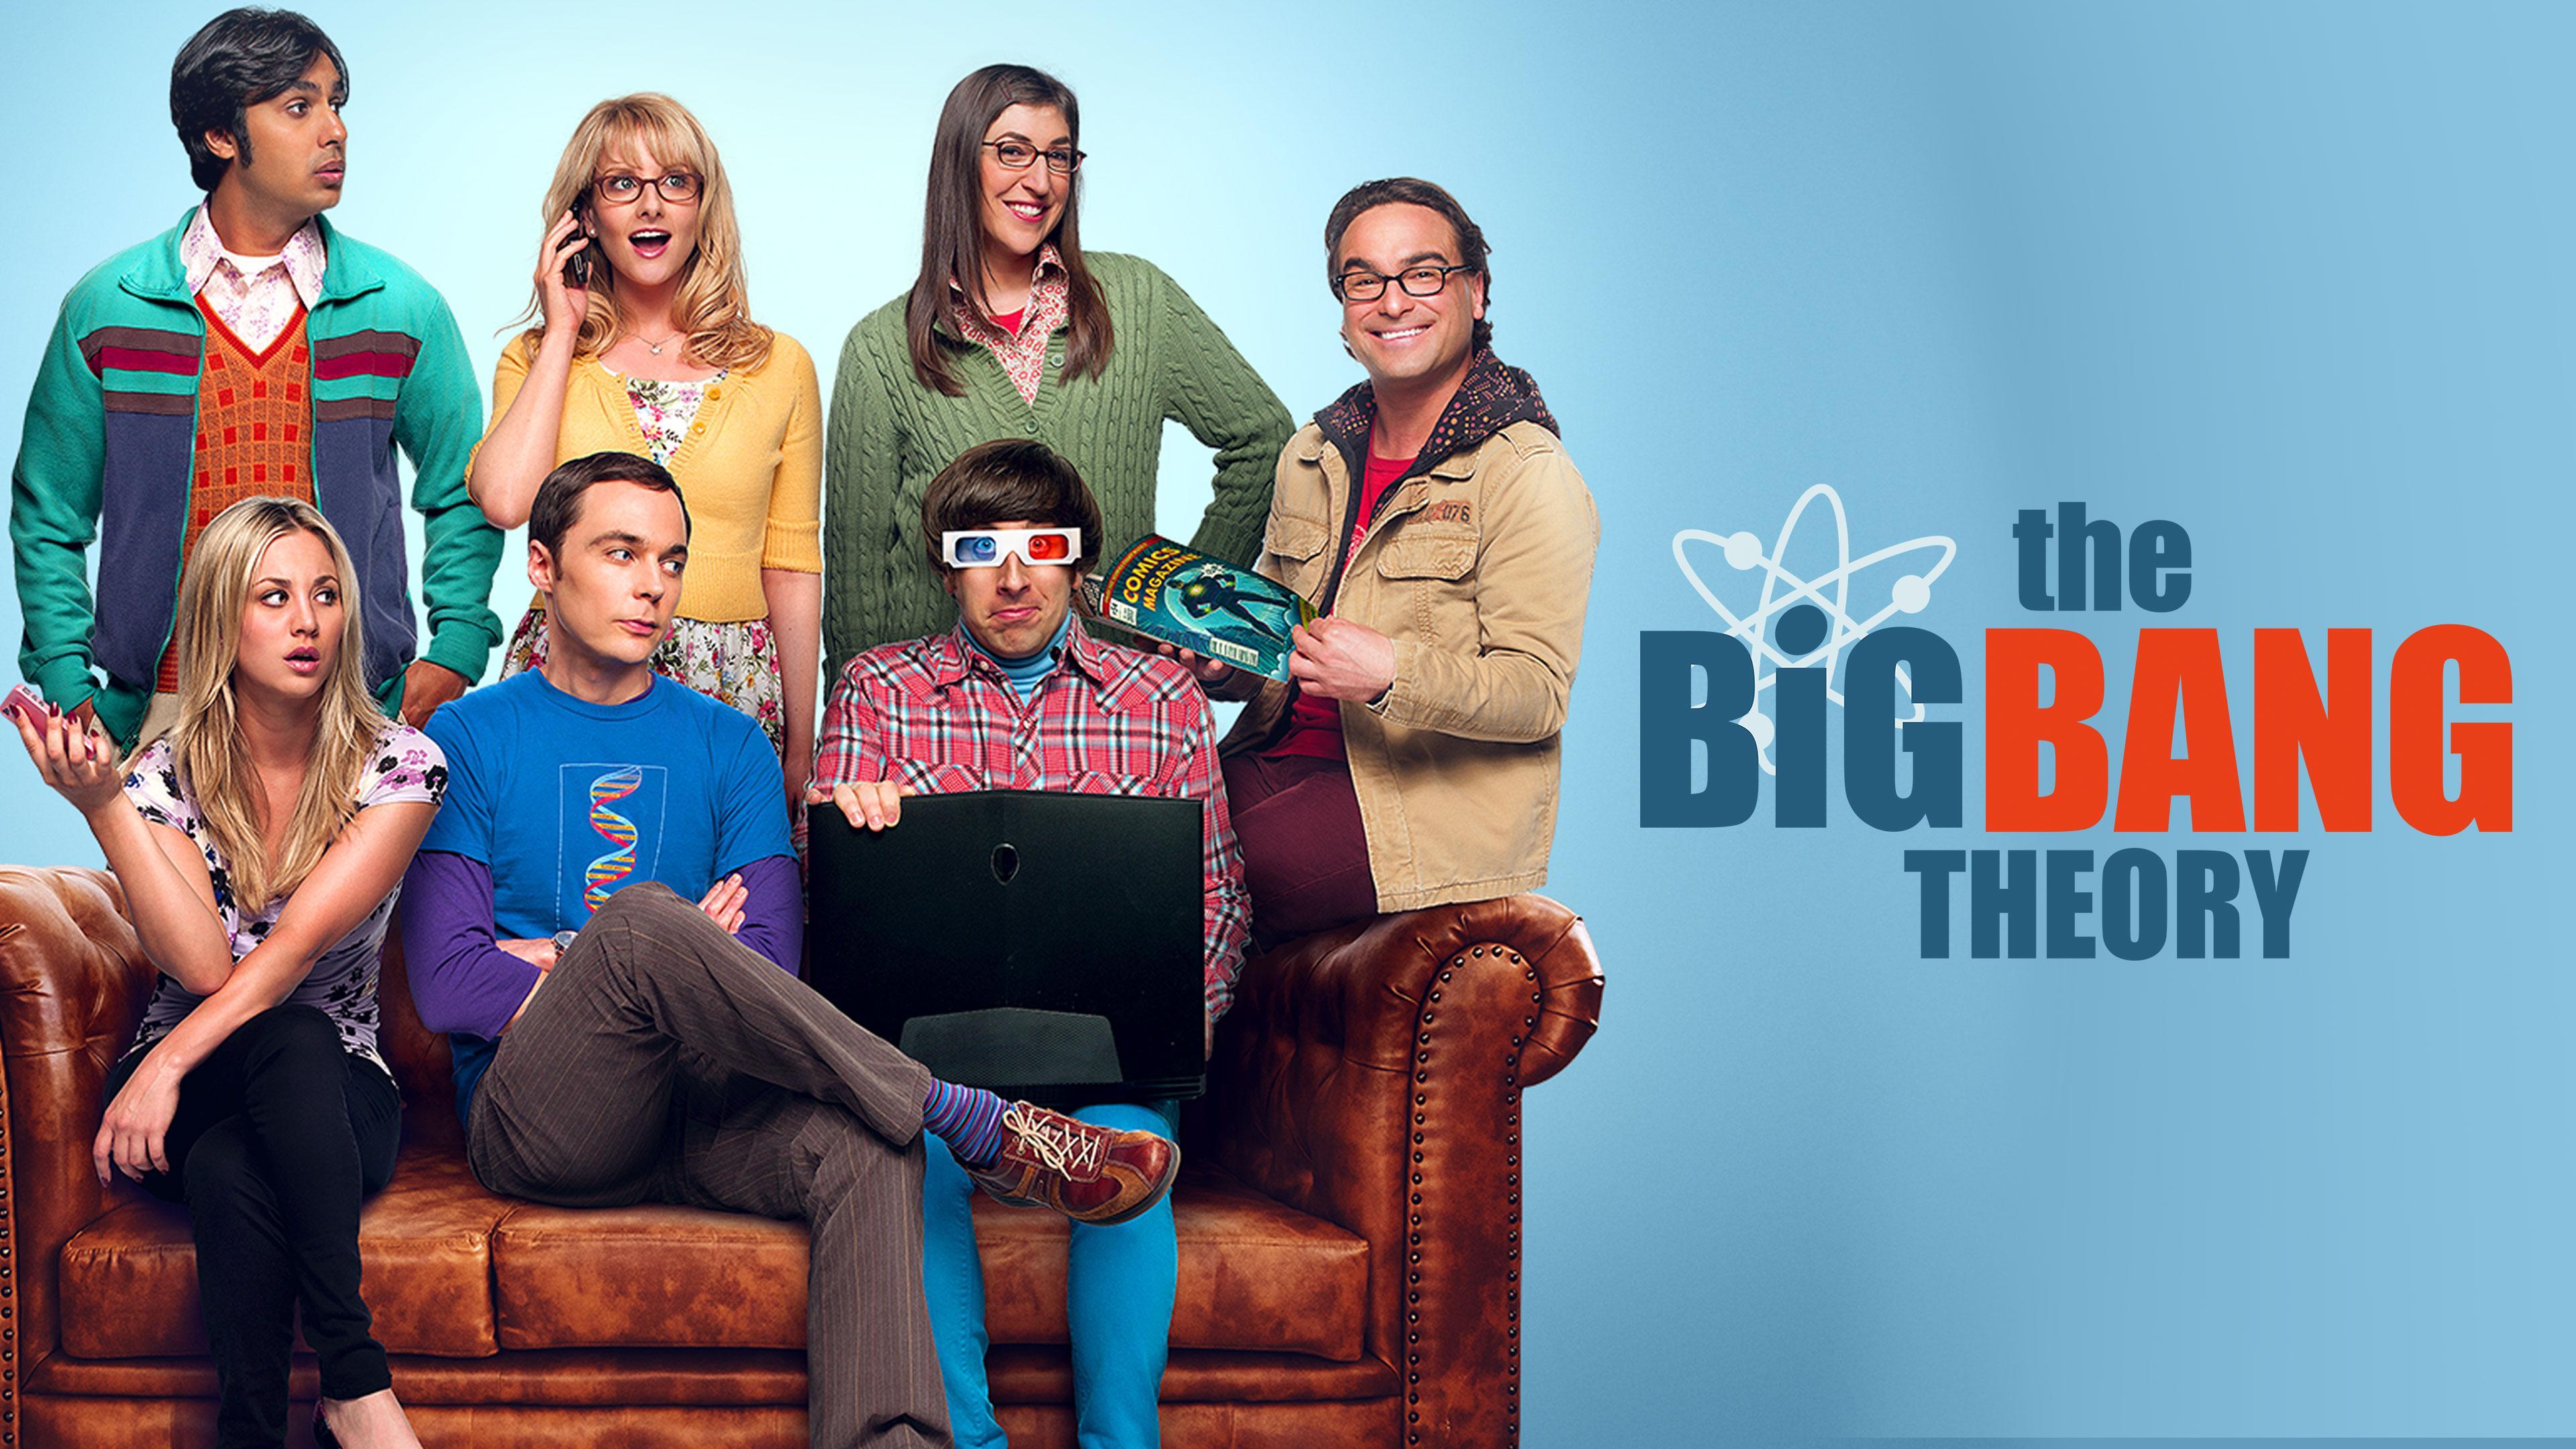 Watch The Big Bang Theory